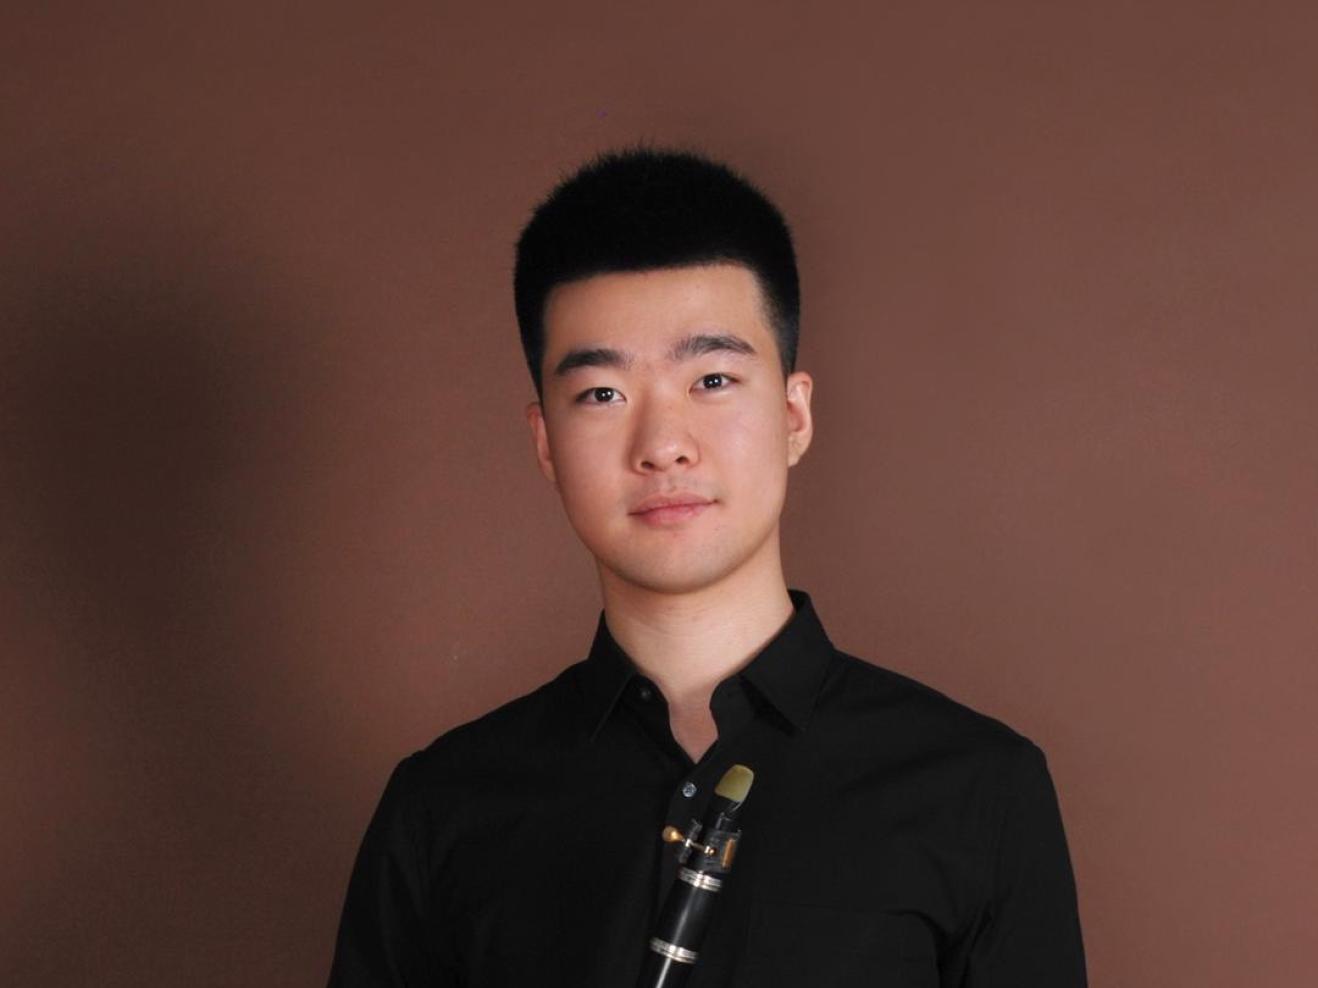 Bild von Hanwen Liu in schwarzer Kleidung mit Klarinette